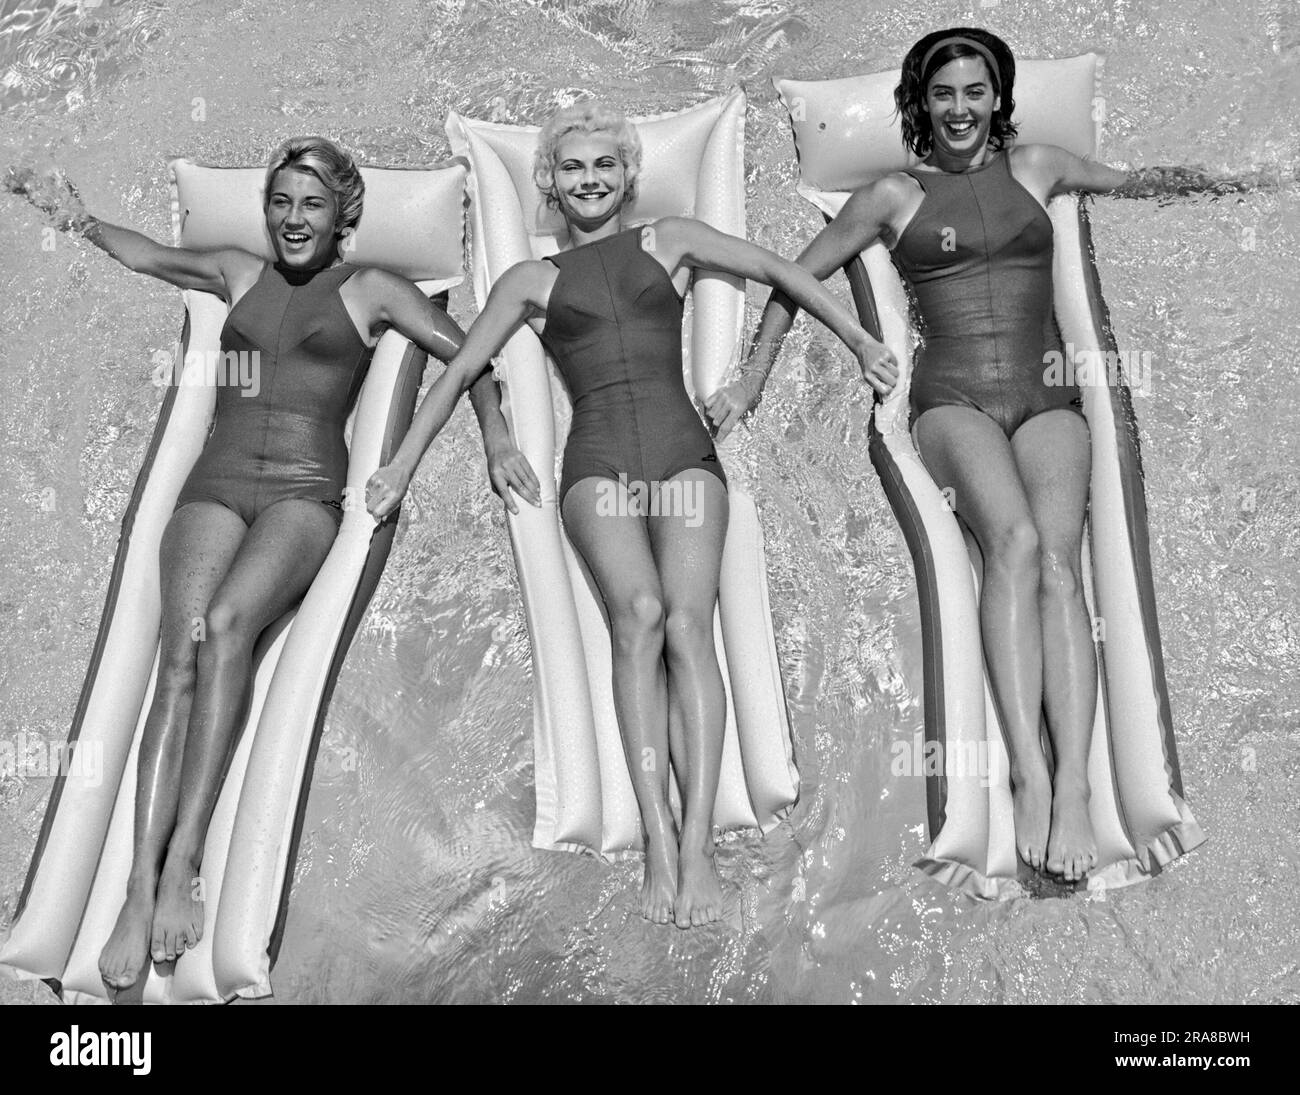 Stati Uniti: c. 1962 tre giovani donne in costume da bagno a pezzo unico che galleggiano insieme su zattere in piscina. Foto Stock